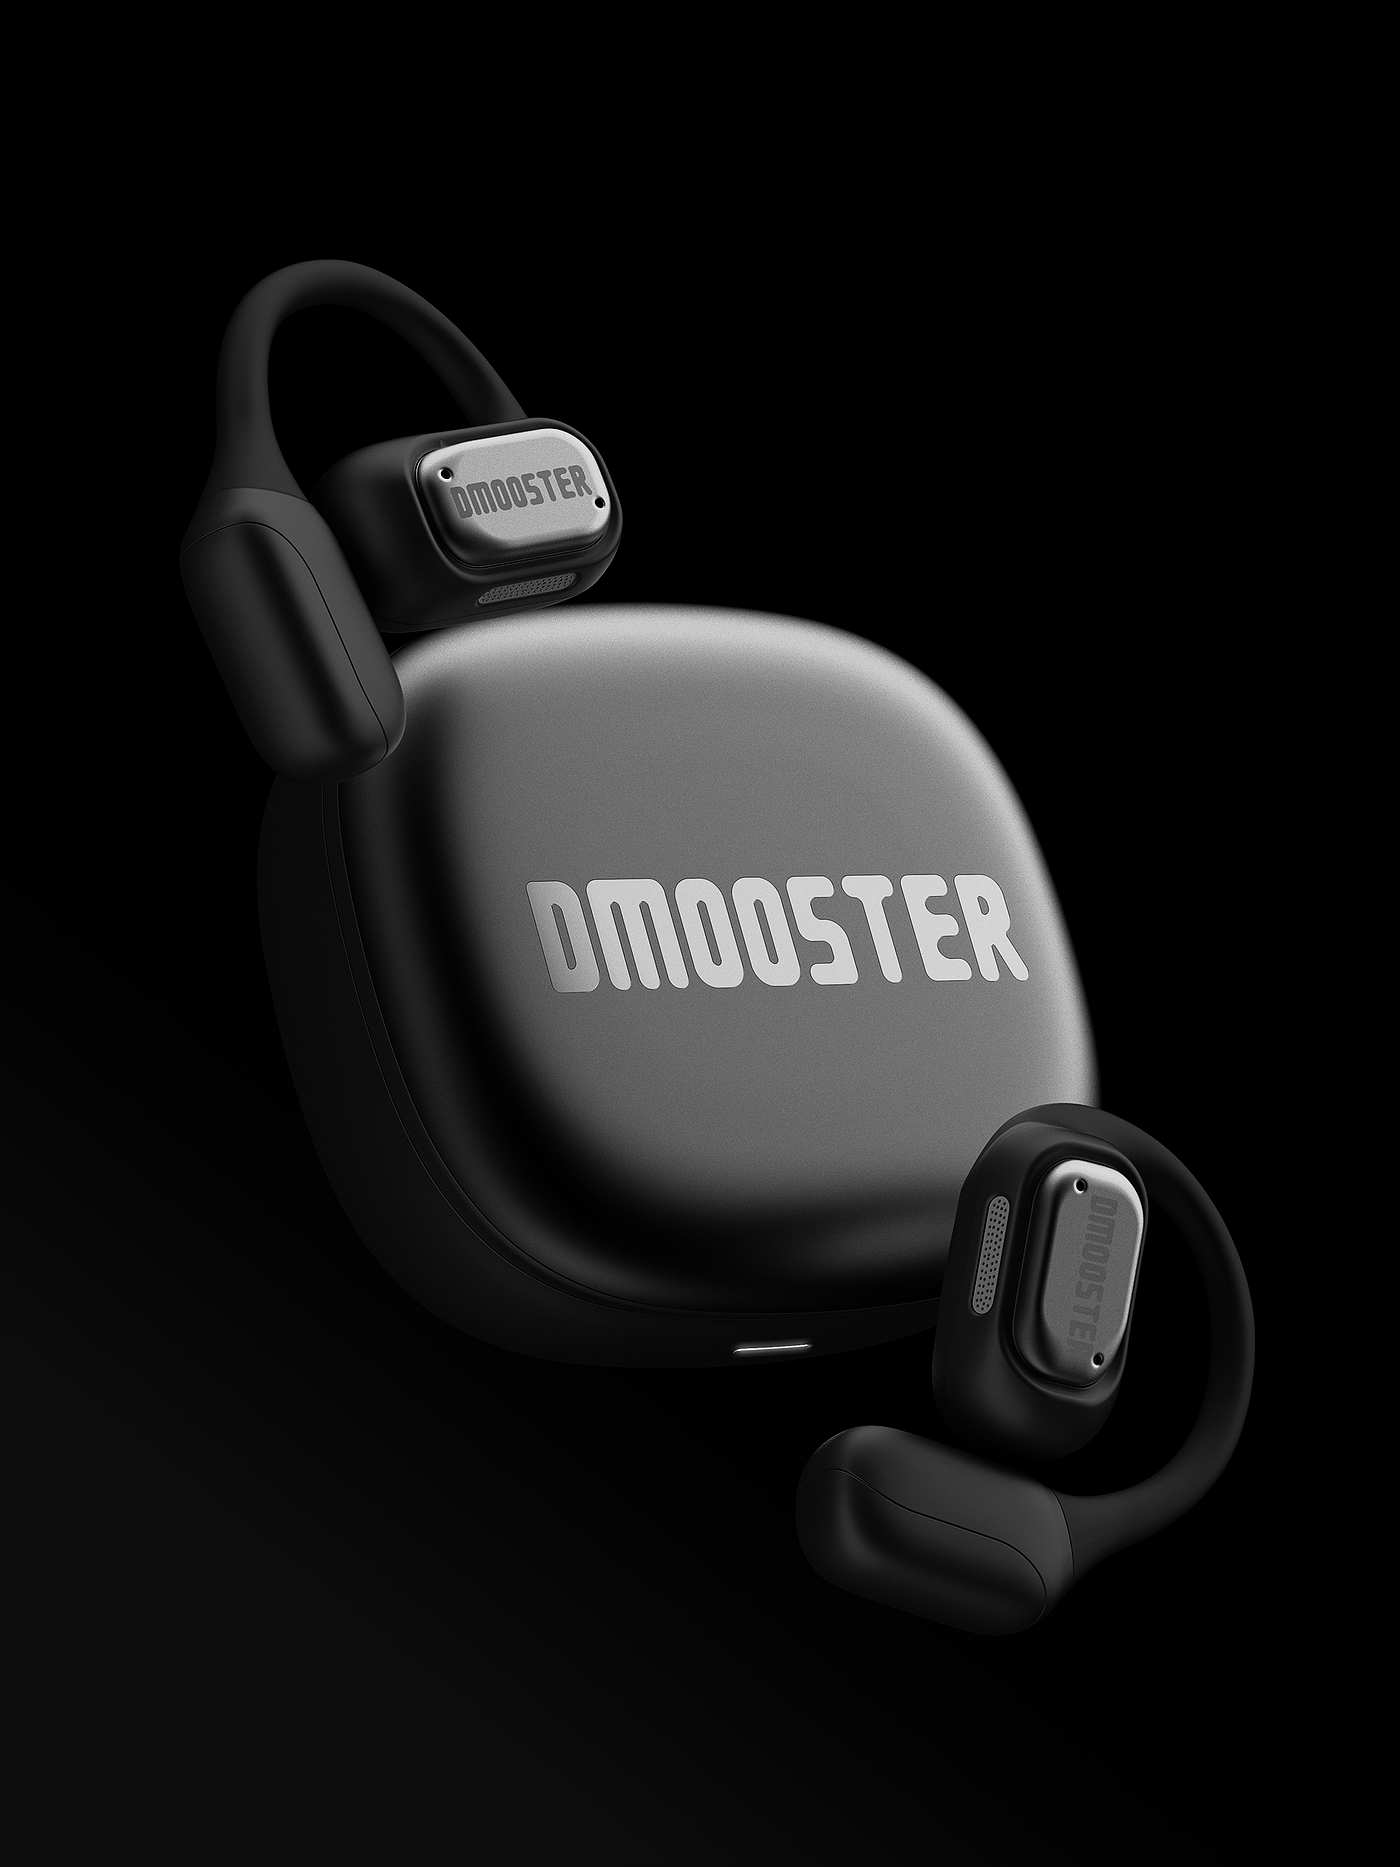 大怪兽，dmooster，蓝牙耳机，3C产品，工业设计，潮品，耳机，品牌，